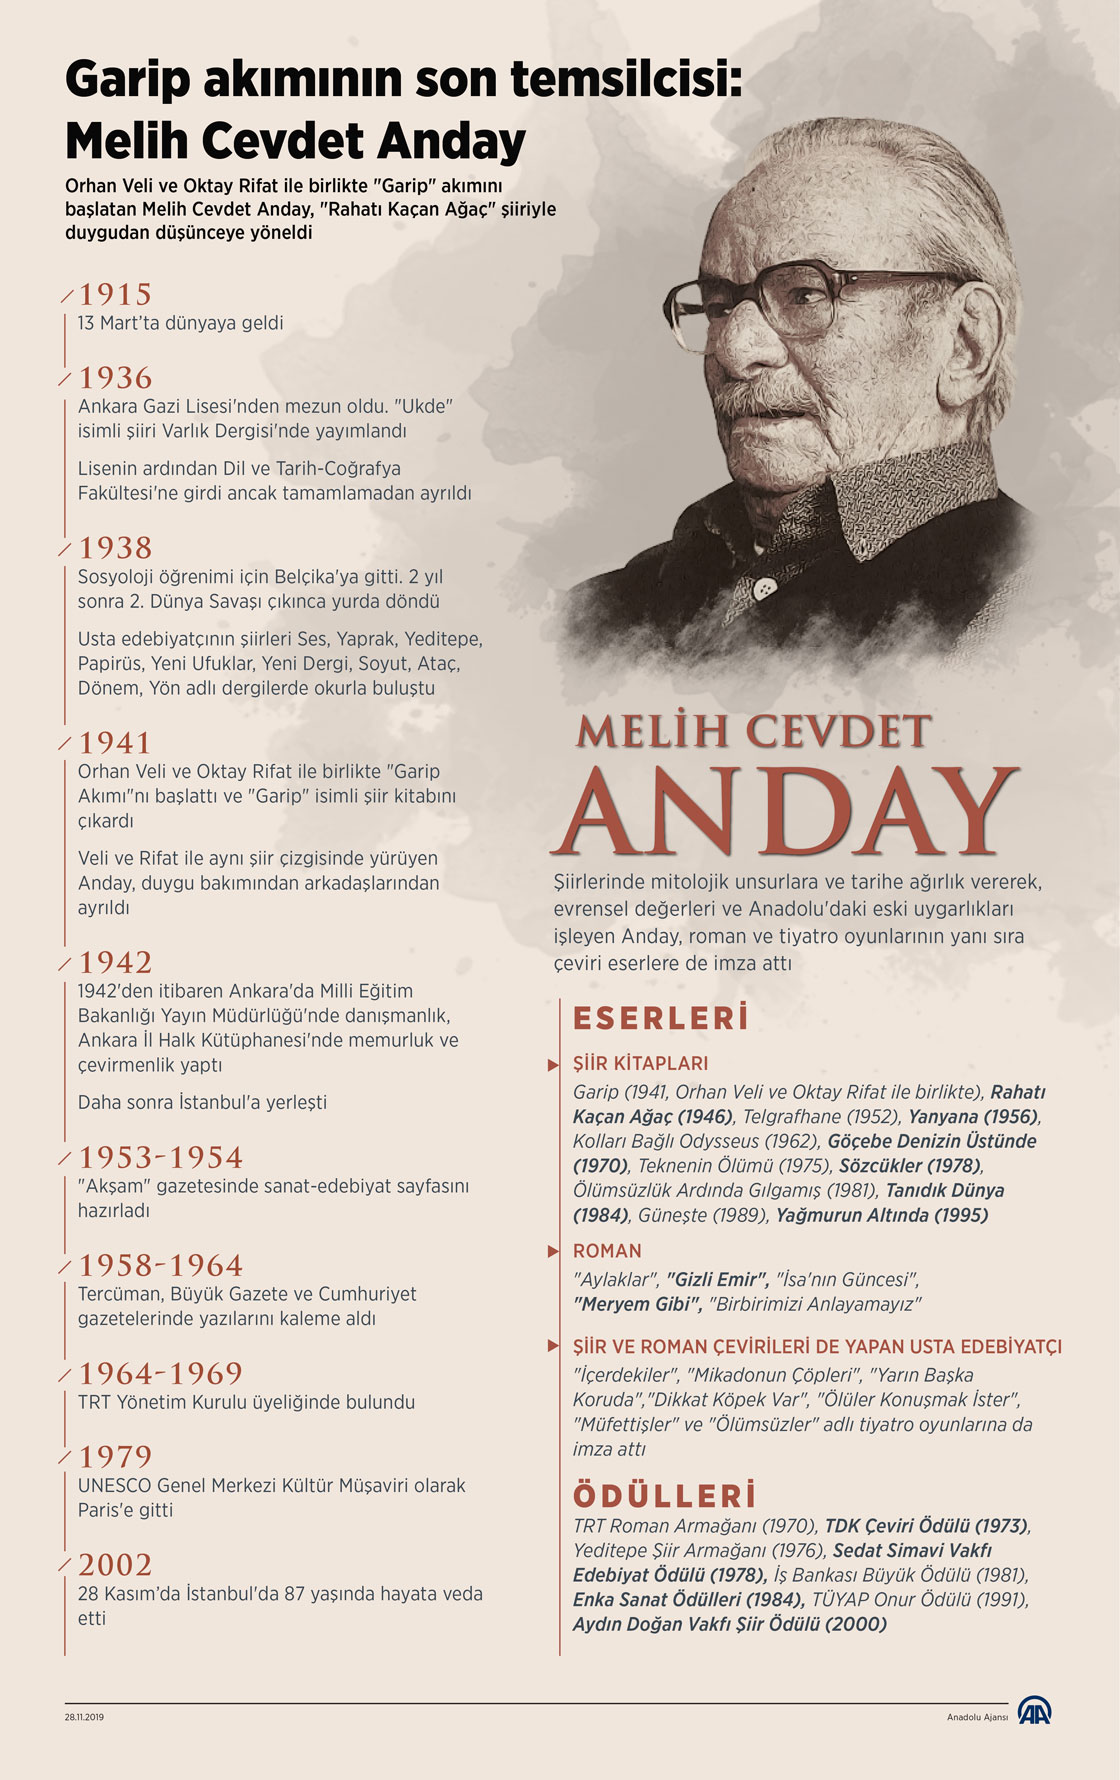 'Garip akımının son temsilcisi: Melih Cevdet Anday'